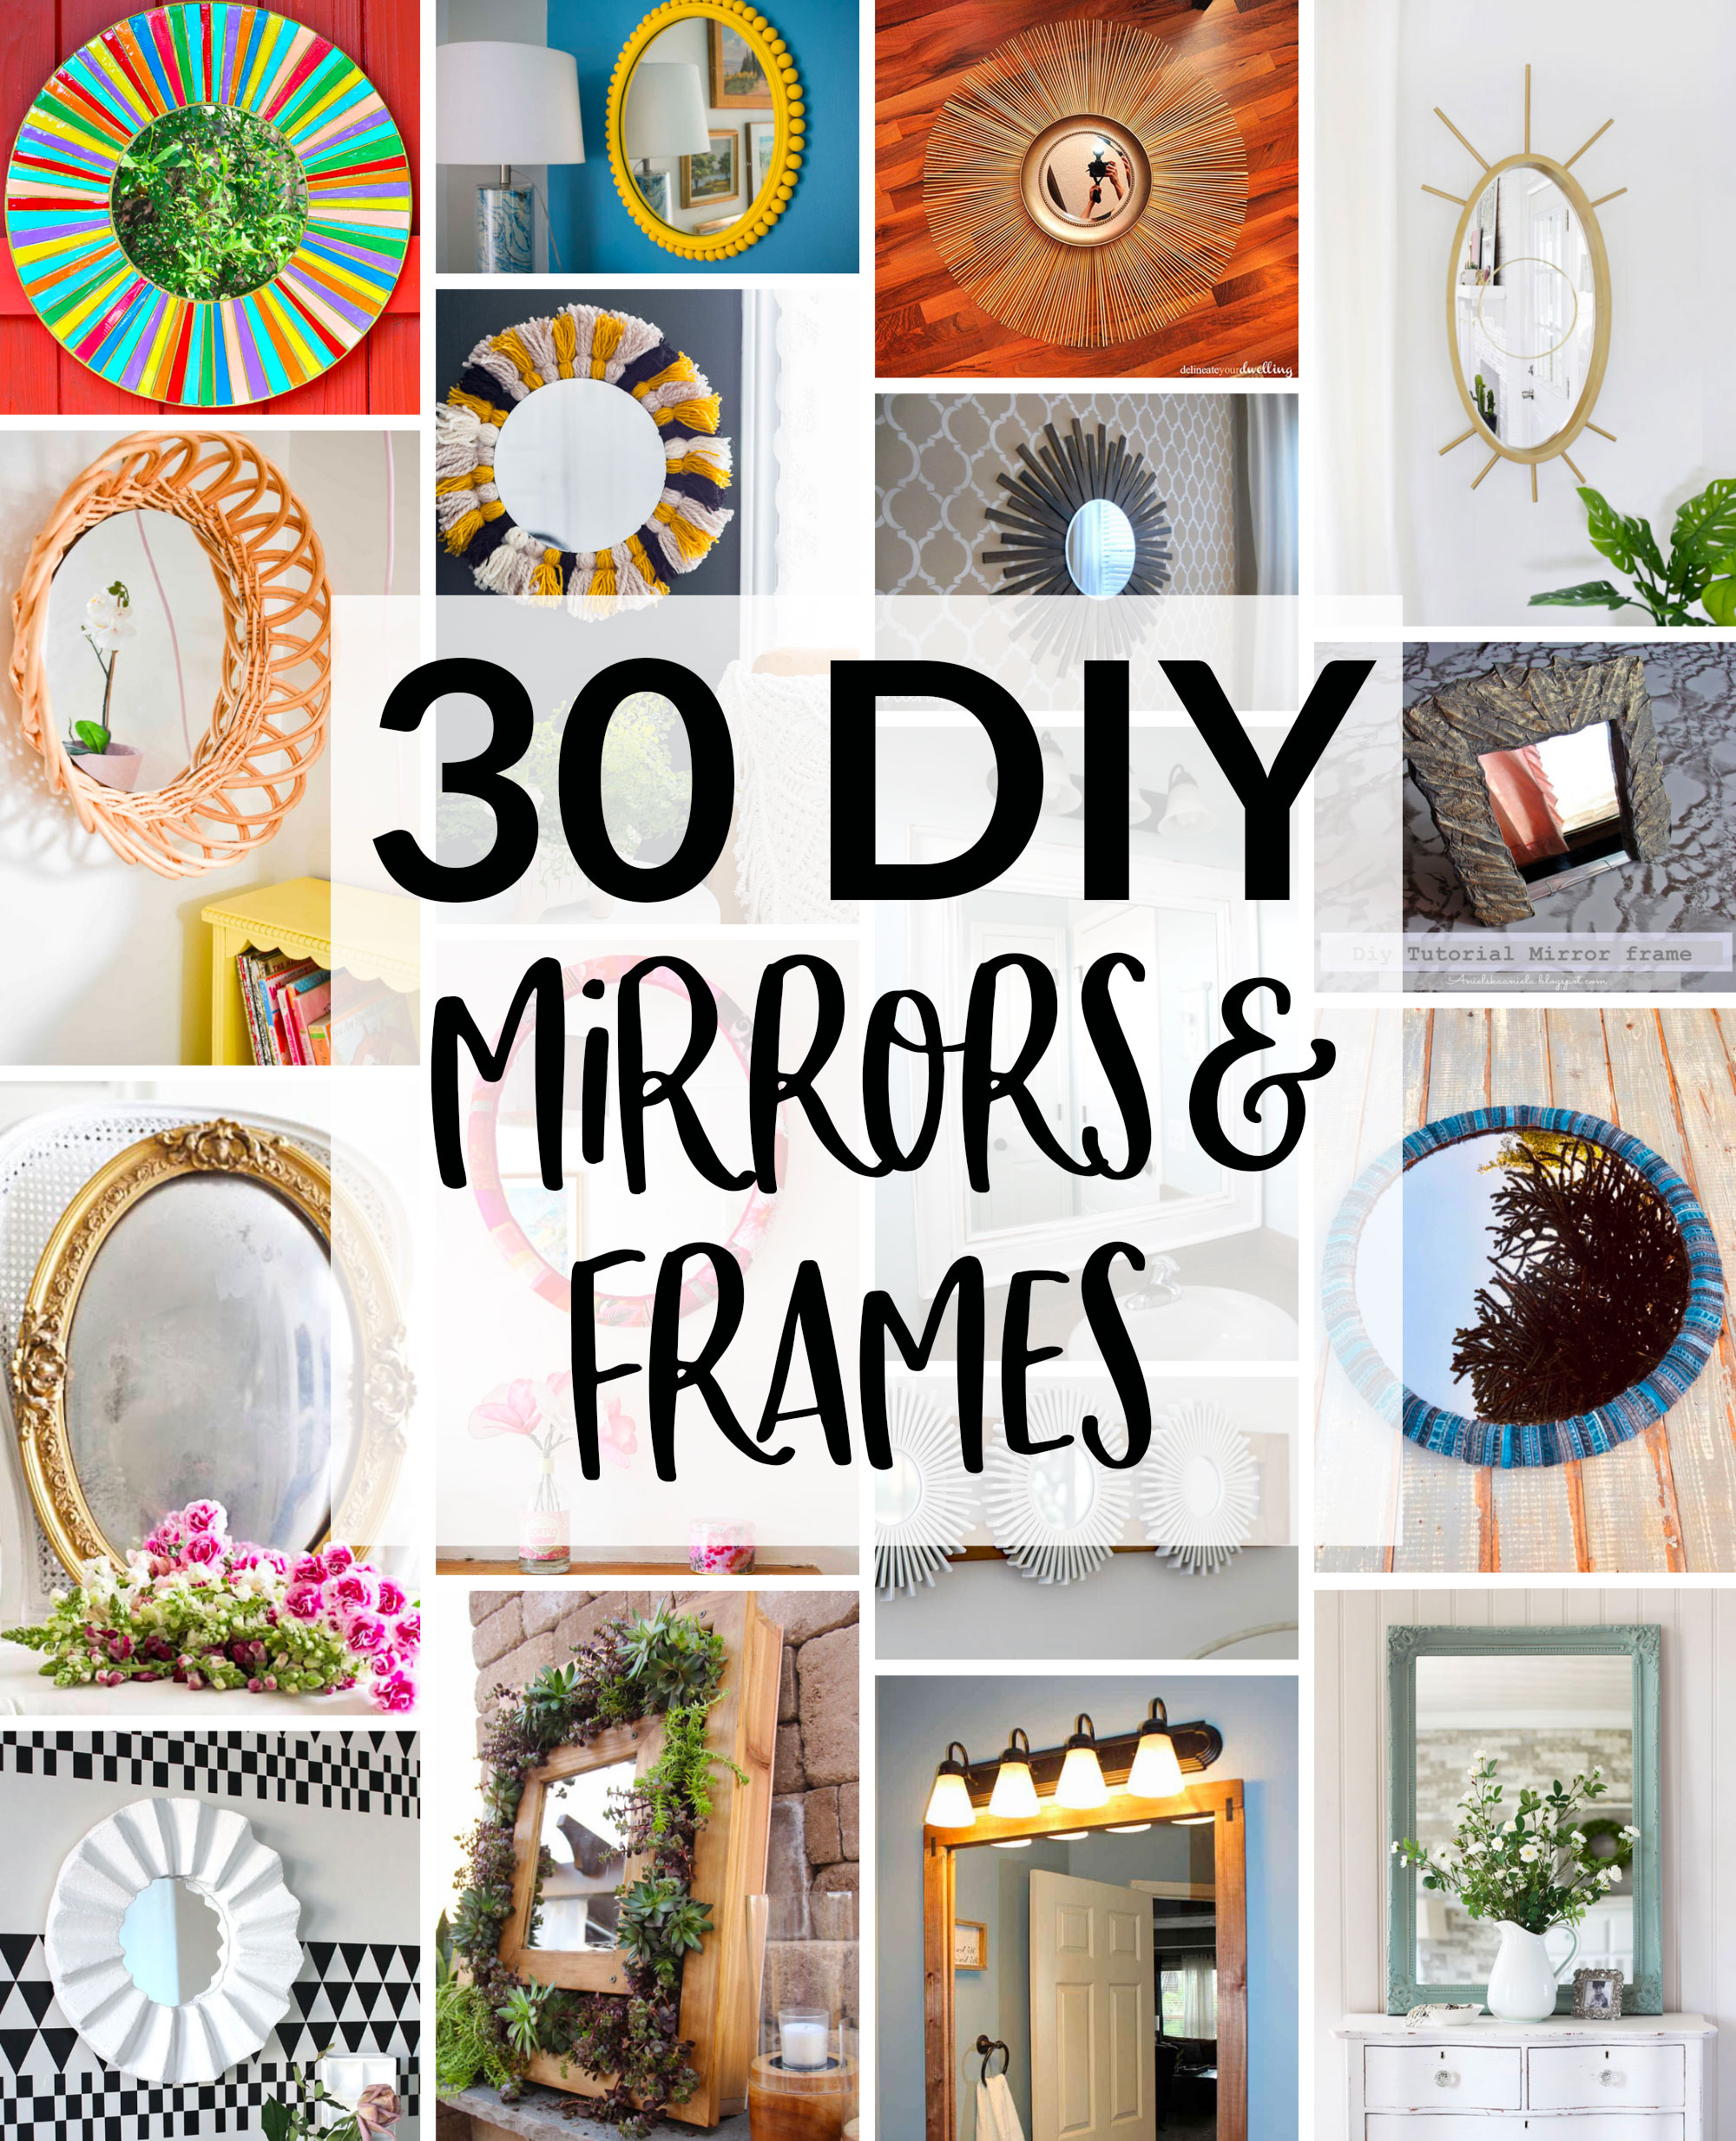 30 Diy Mirror Frames Scratch And Stitch - Diy Mirror Frame Decorating Ideas